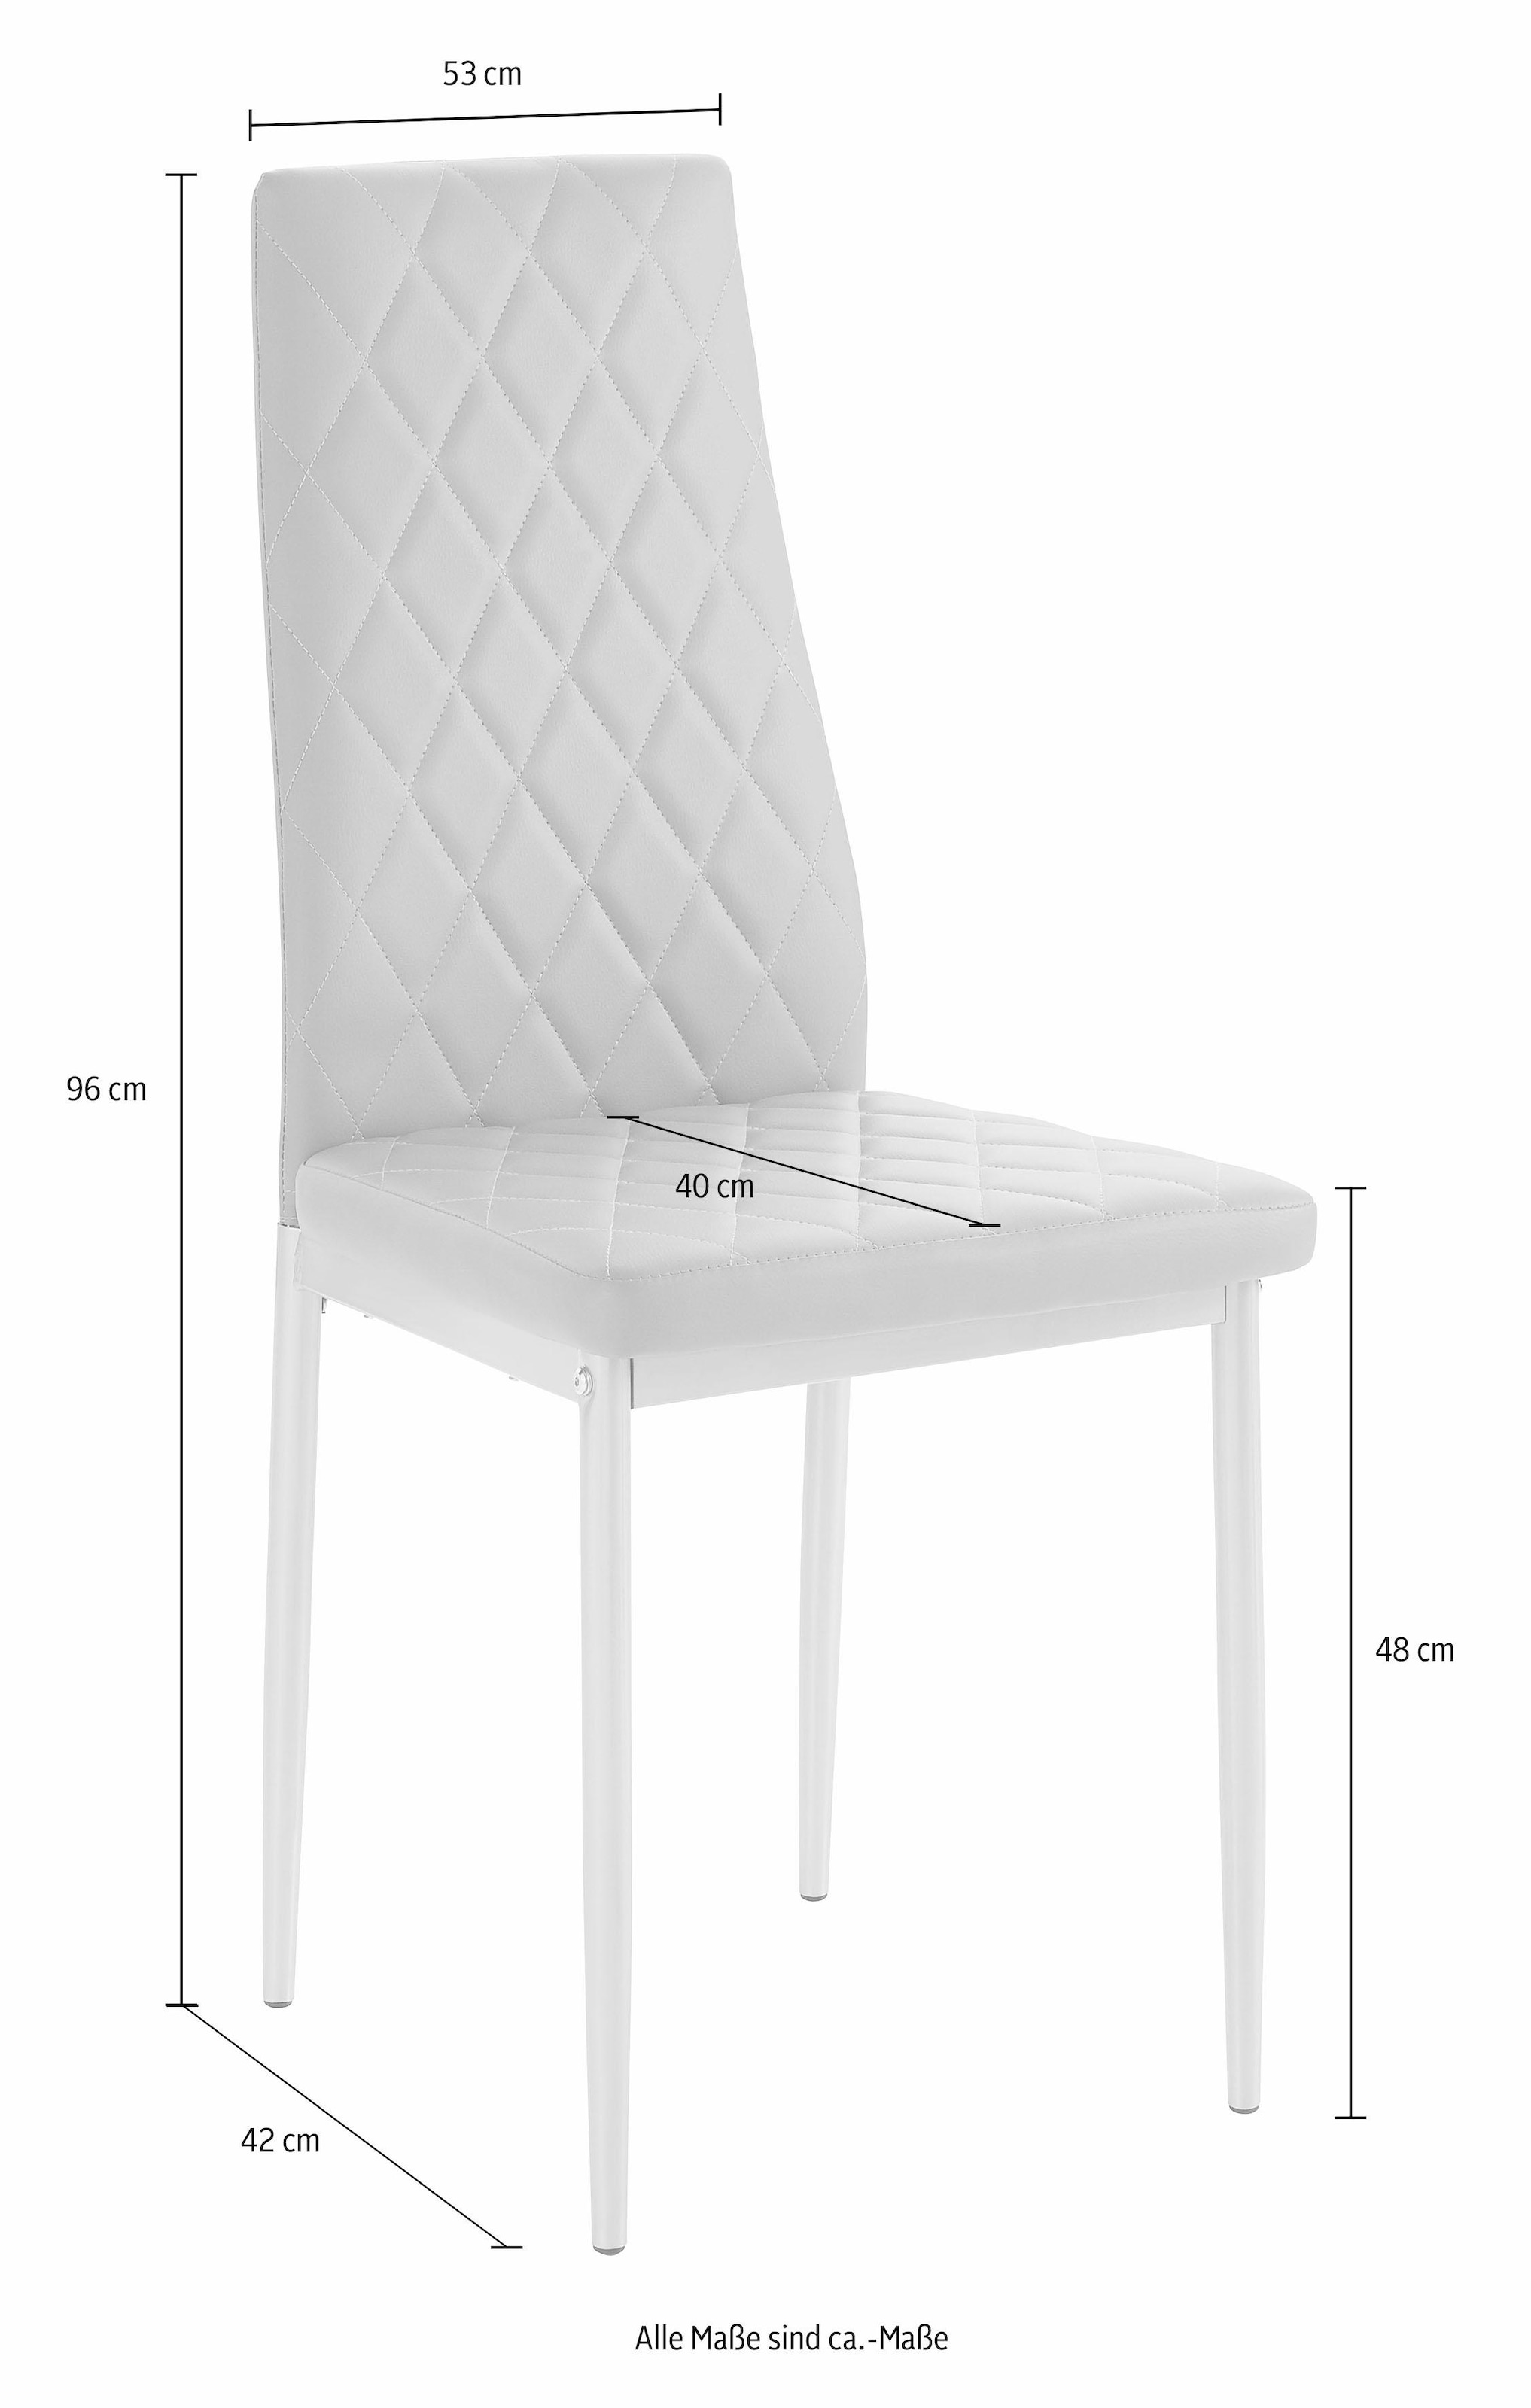 INOSIGN Essgruppe, (Set, 5 tlg.), 4 Stühle mit Tisch in schieferfarben, Breite 120 cm